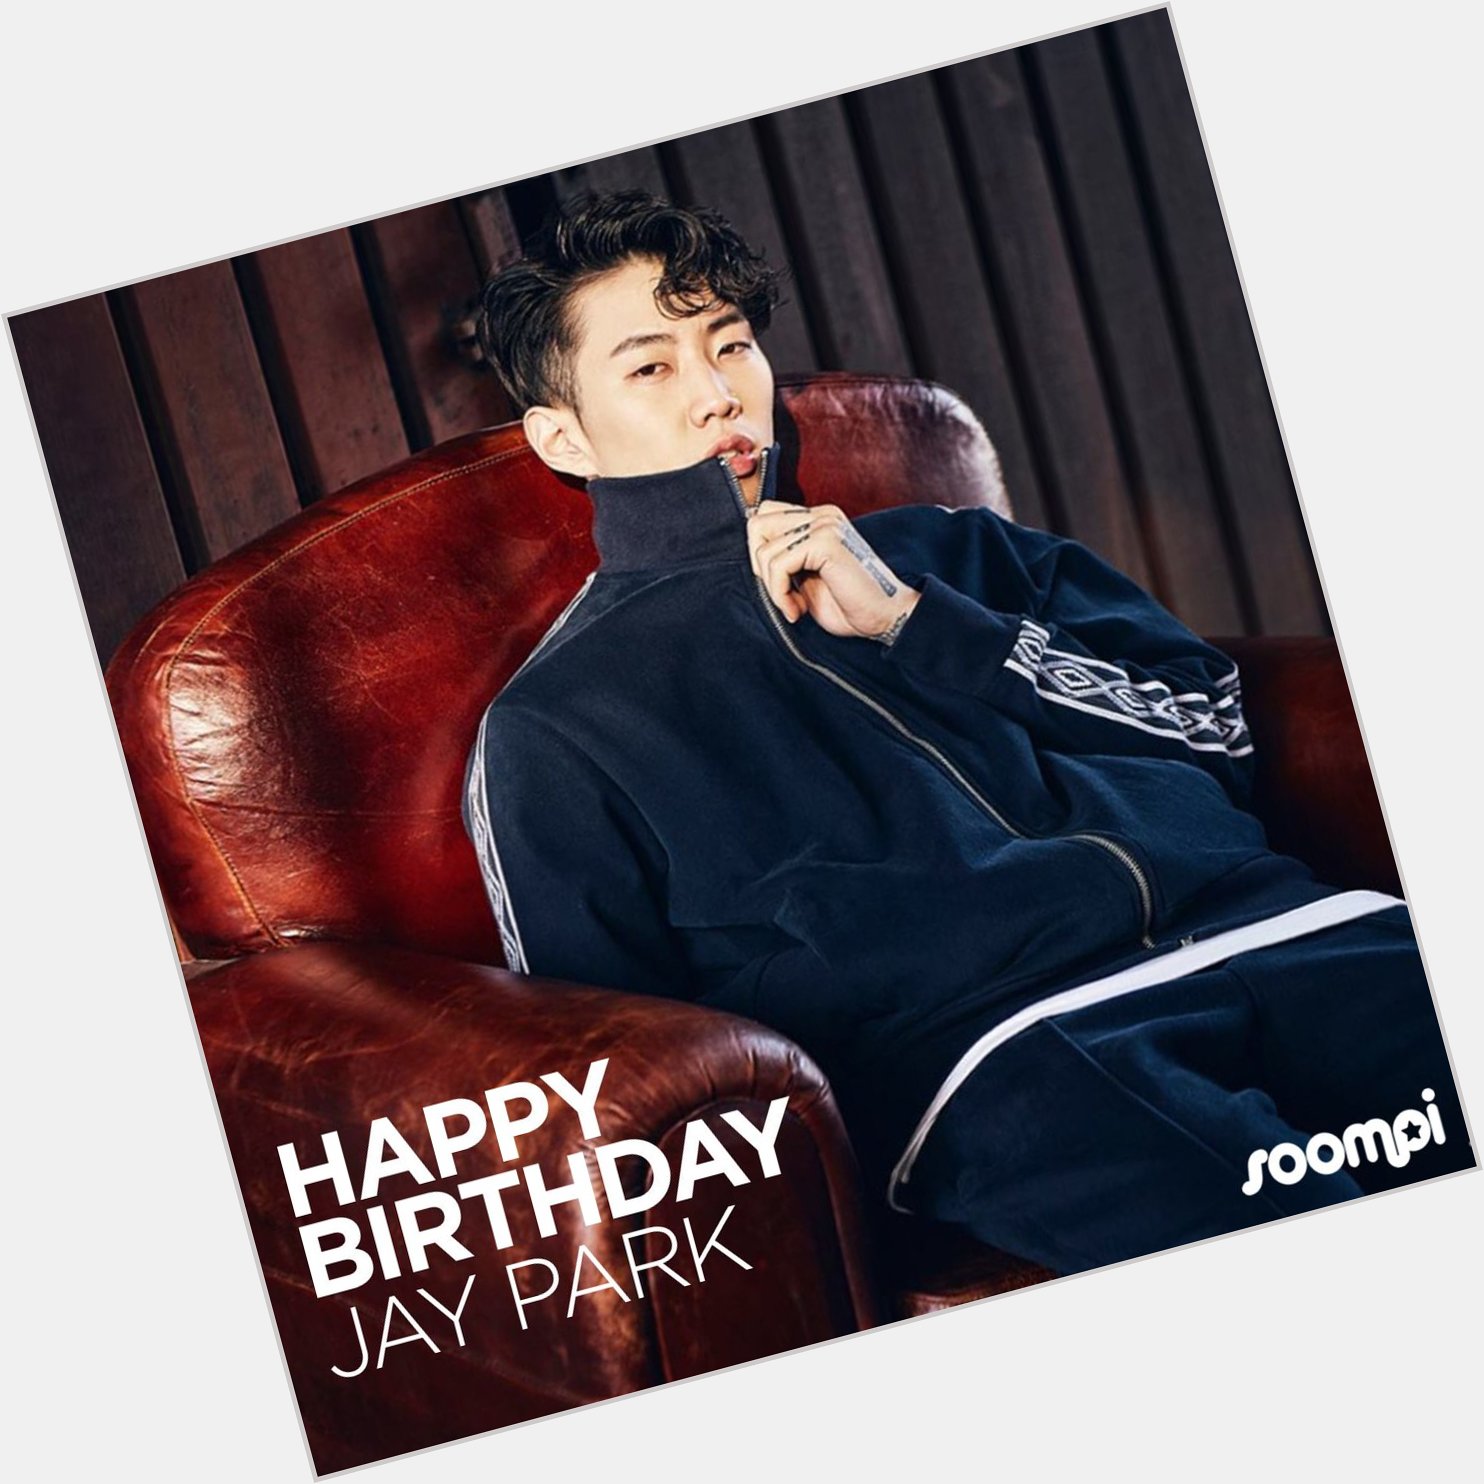 Happy Birthday to Jay Park! 